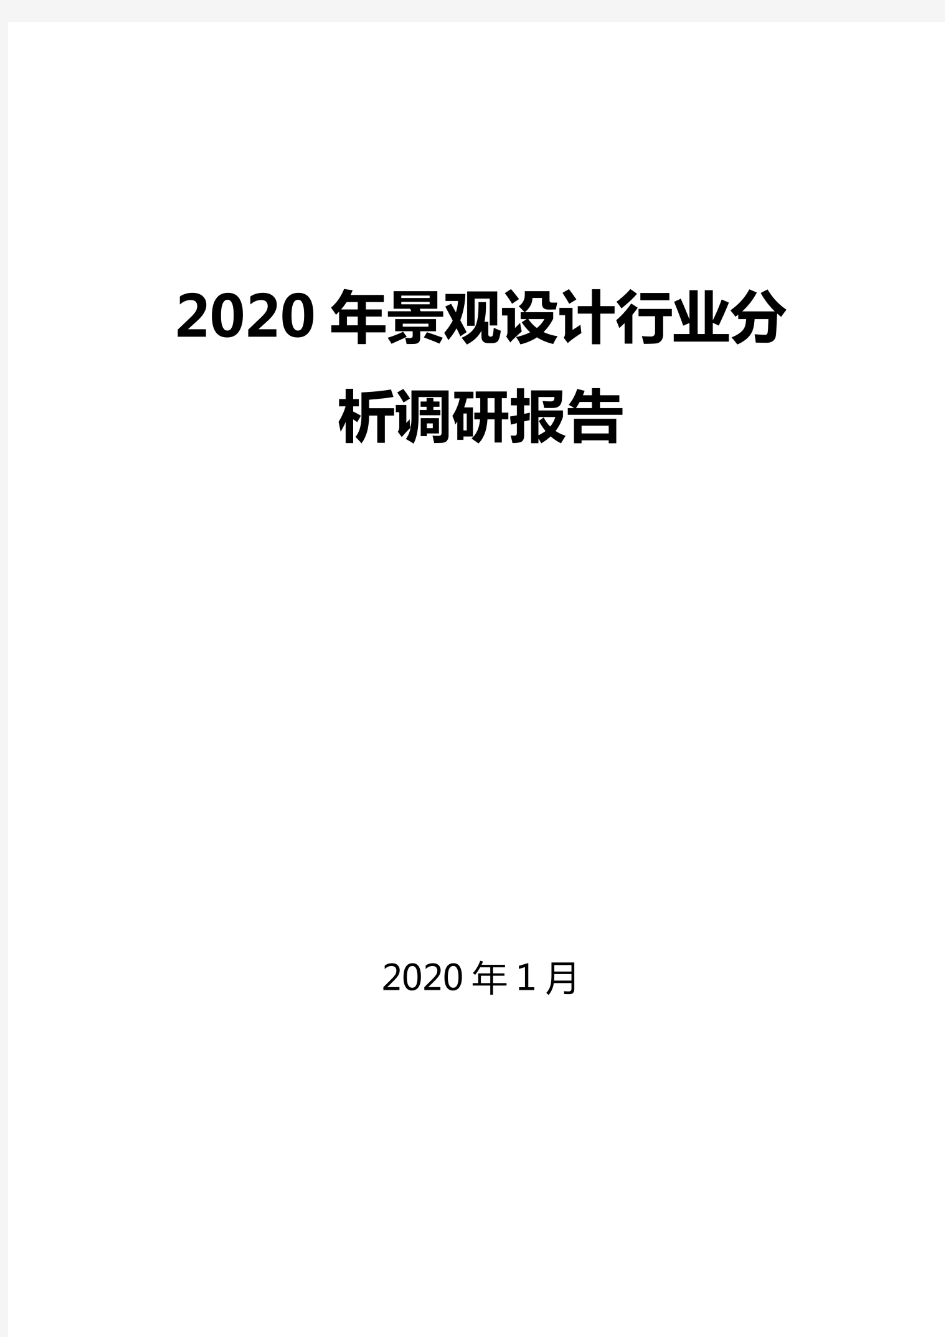 2020景观设计行业分析报告